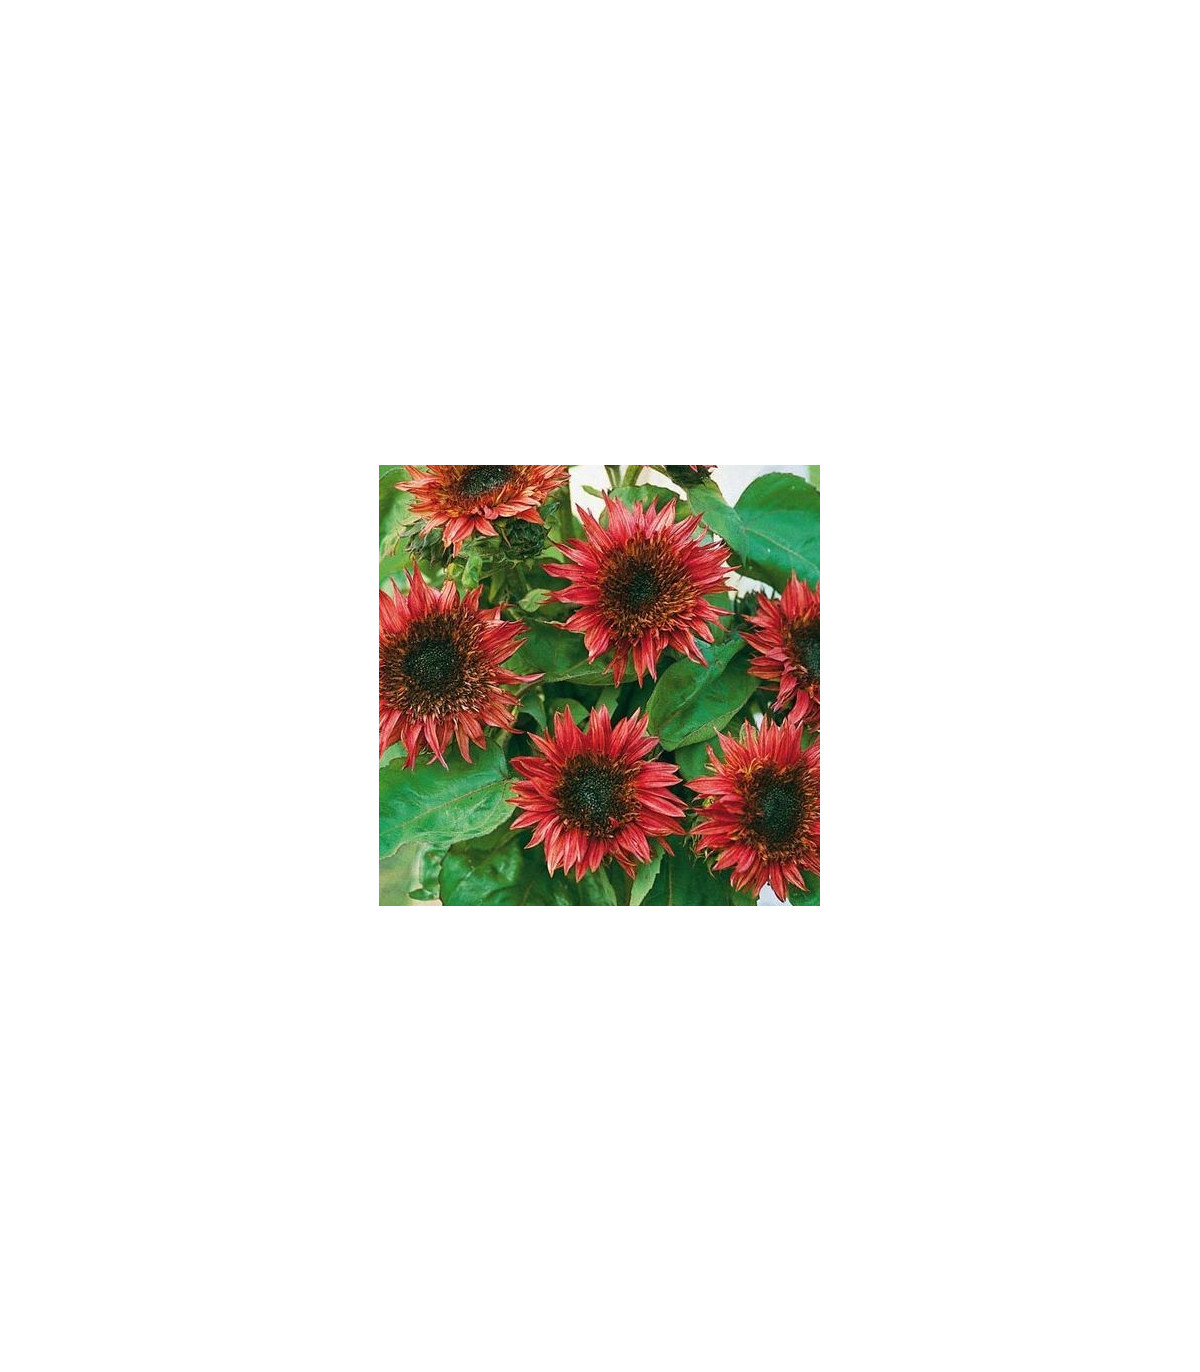 Slunečnice roční F1 červená Double dandy - Helianthus annuus - prodej semen - 6 ks